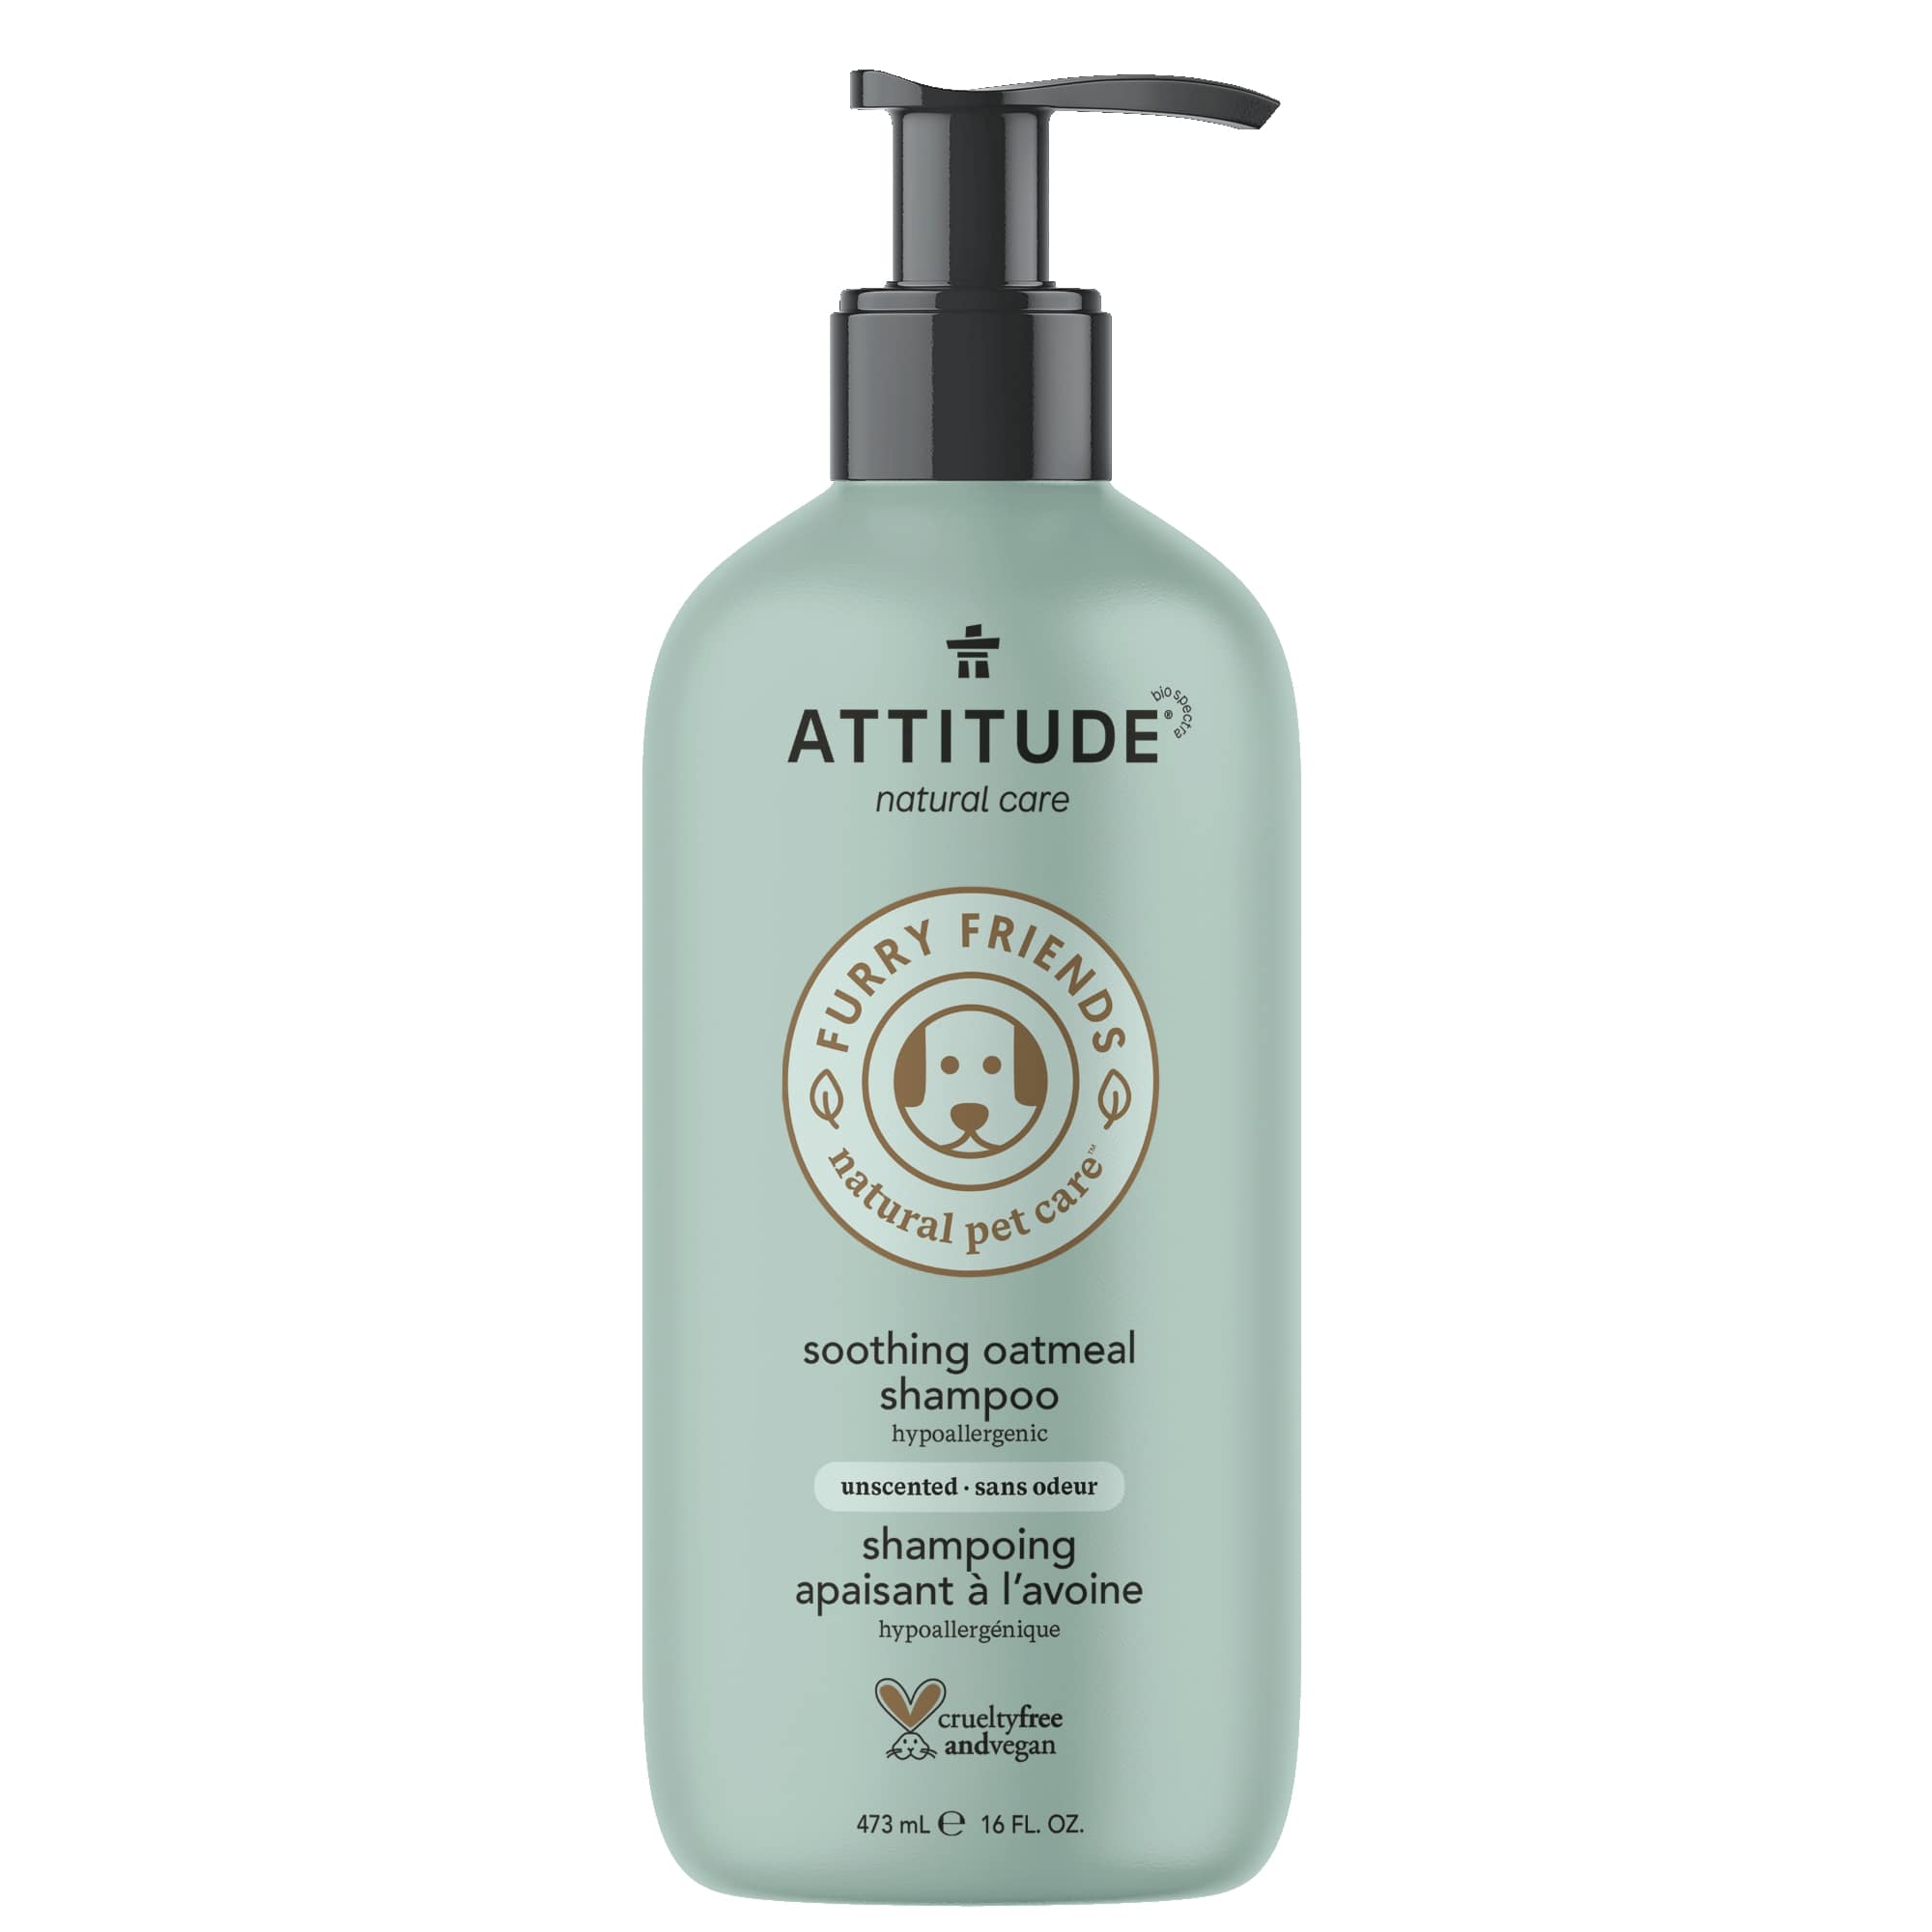 ATTITUDE-shampoo-oatmeal-unscented-81141_en?_main?